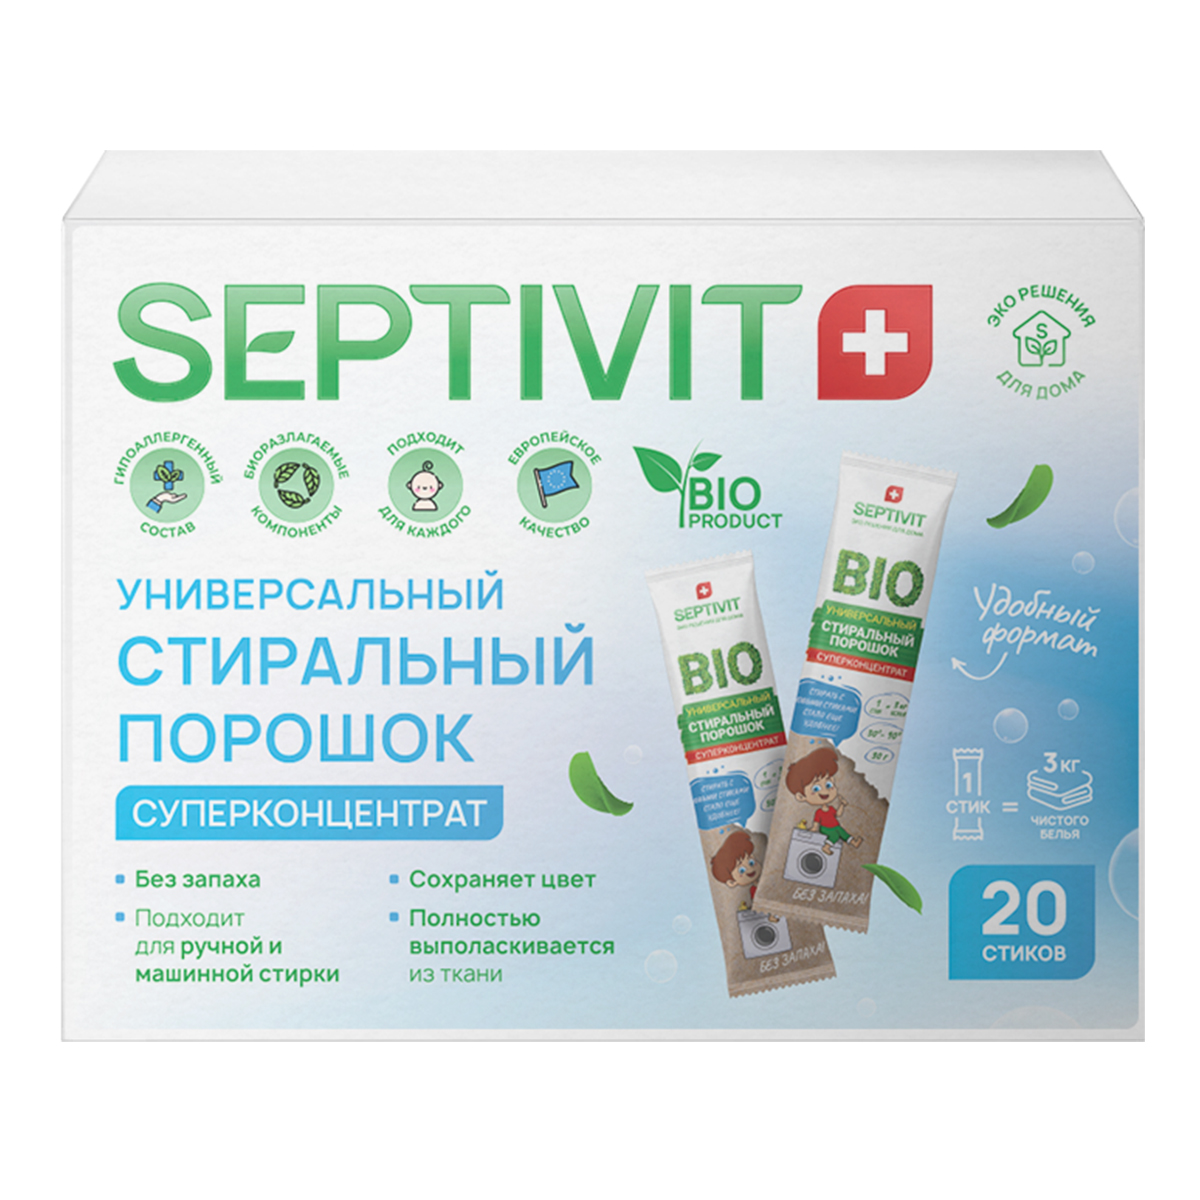 Стиральный порошок SEPTIVIT Premium в стиках 20 шт - фото 1